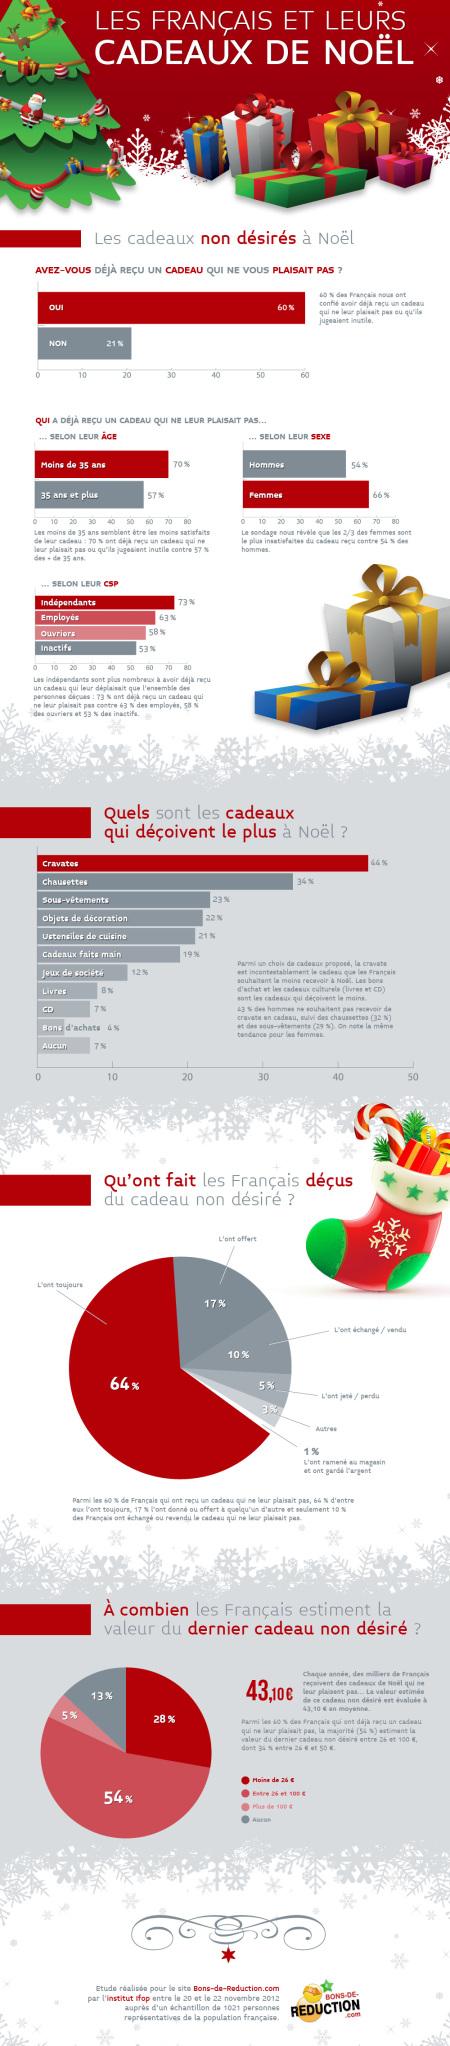  Infographie e commerce : les cadeaux de Noël 2012